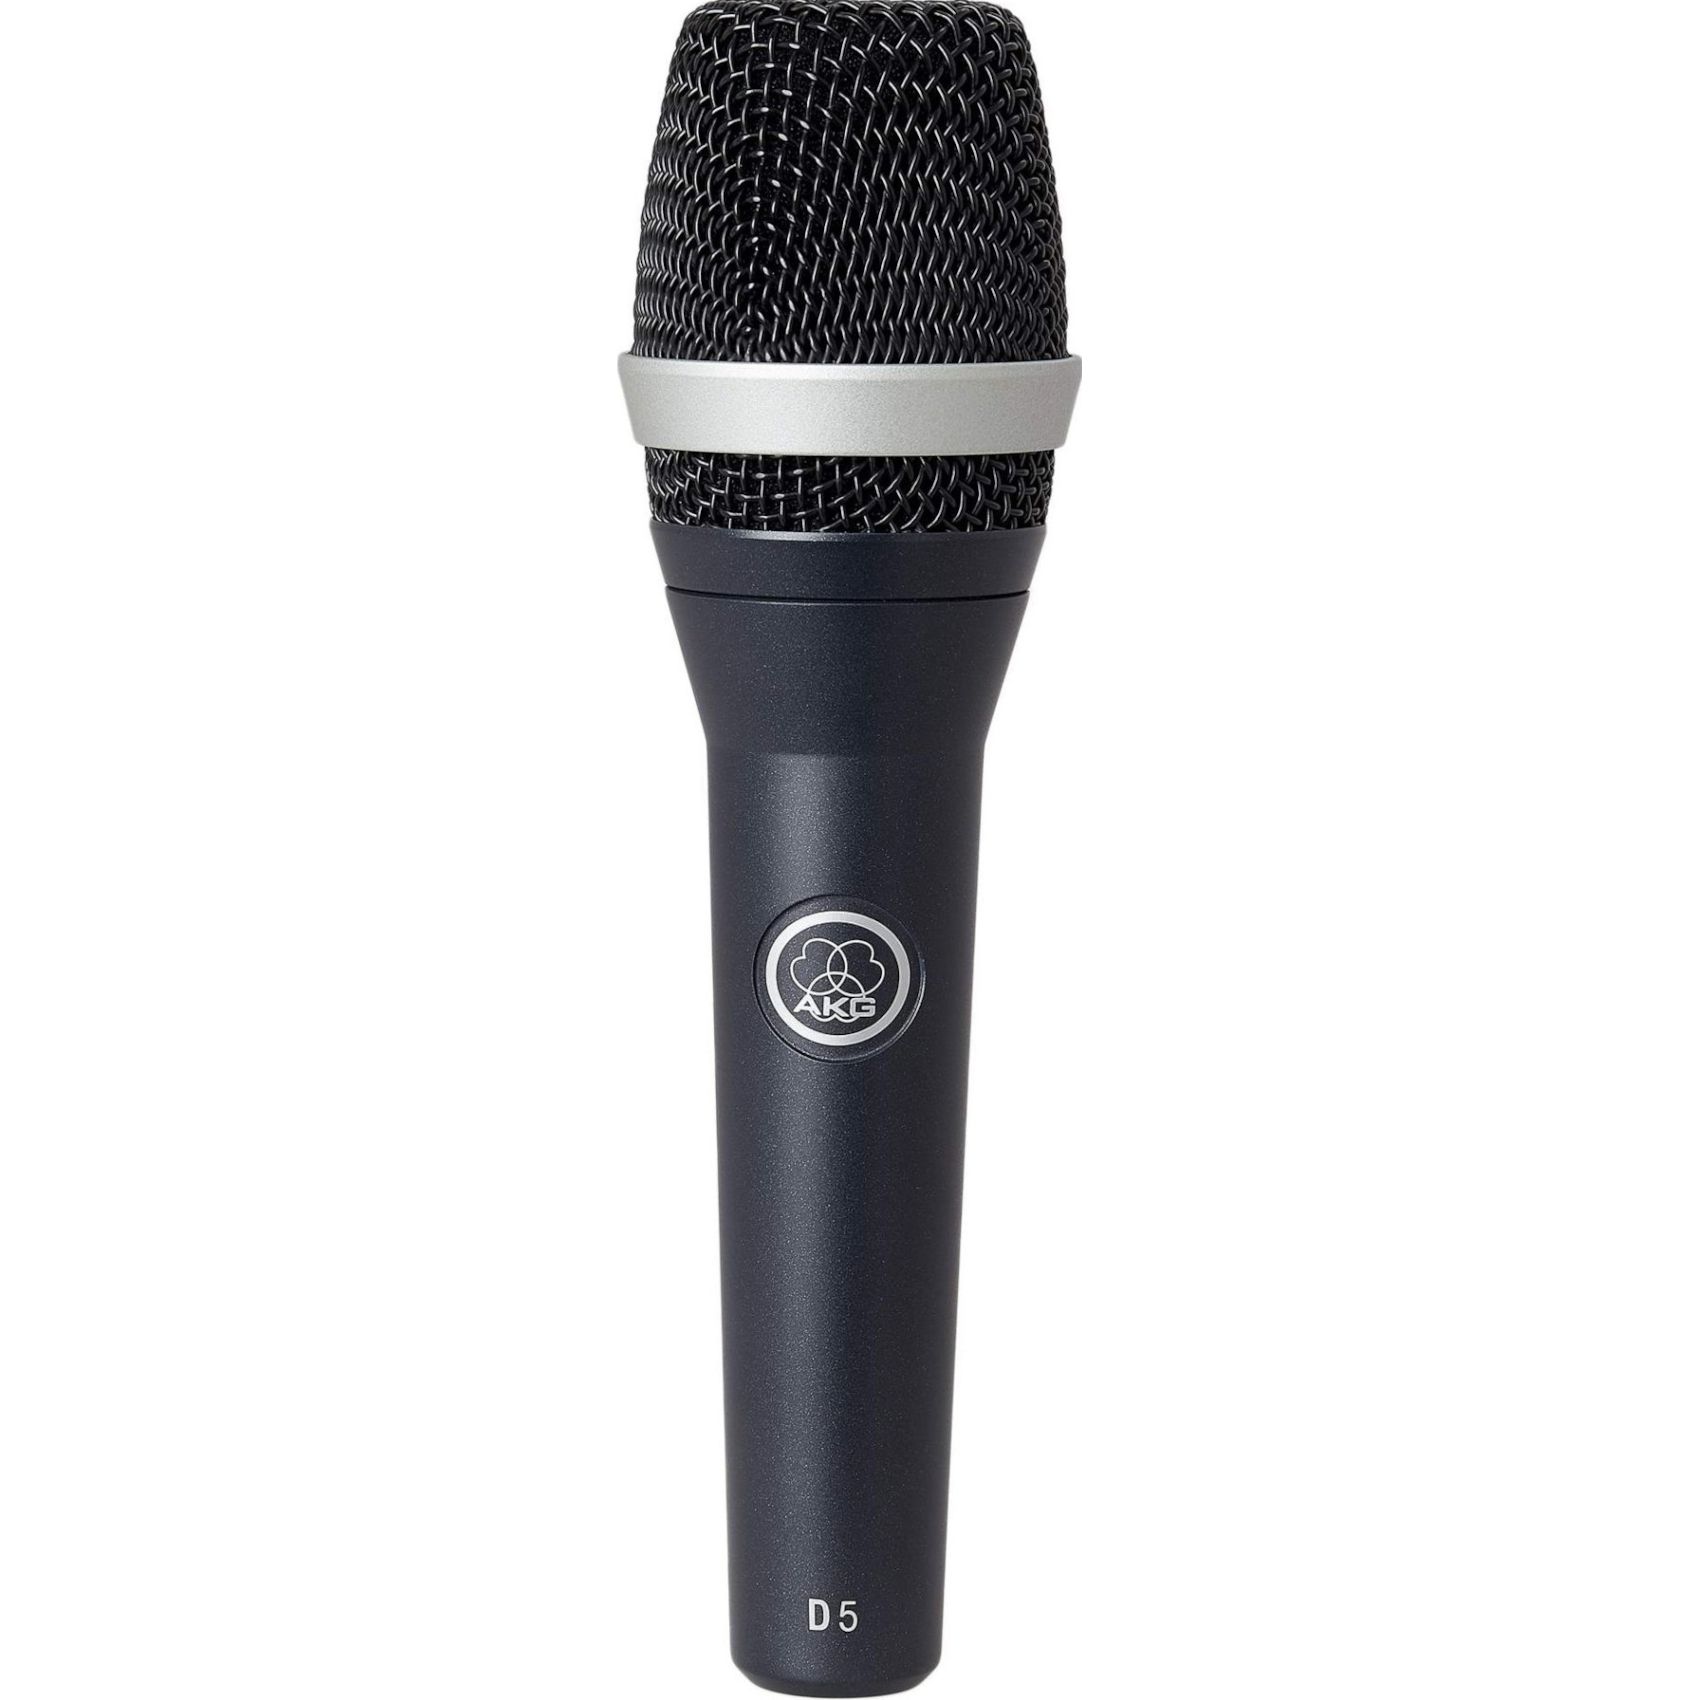 Купить вокальный. Микрофон AKG p5 s. Вокальный микрофон AKG d5. Конденсаторный микрофон AKG c5. Динамический микрофон AKG p3s.